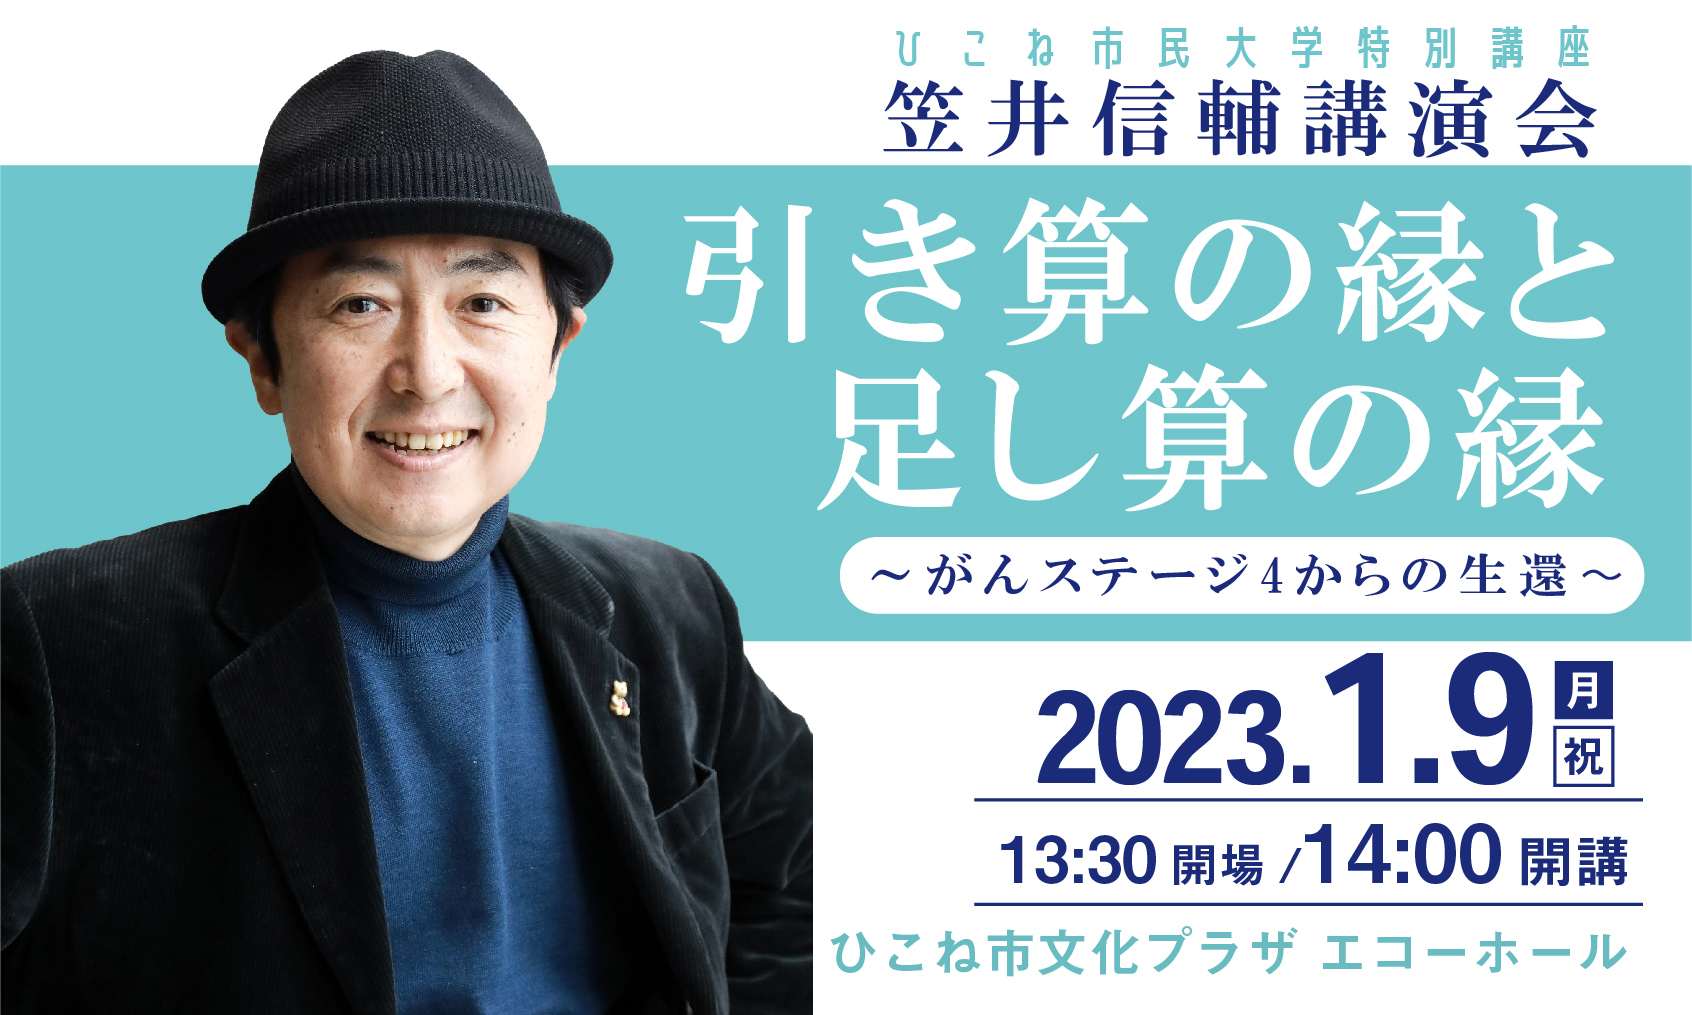 笠井信輔講演会～がんステージ4からの生還～
滋賀県 ひこね市文化プラザにて1月9日開催